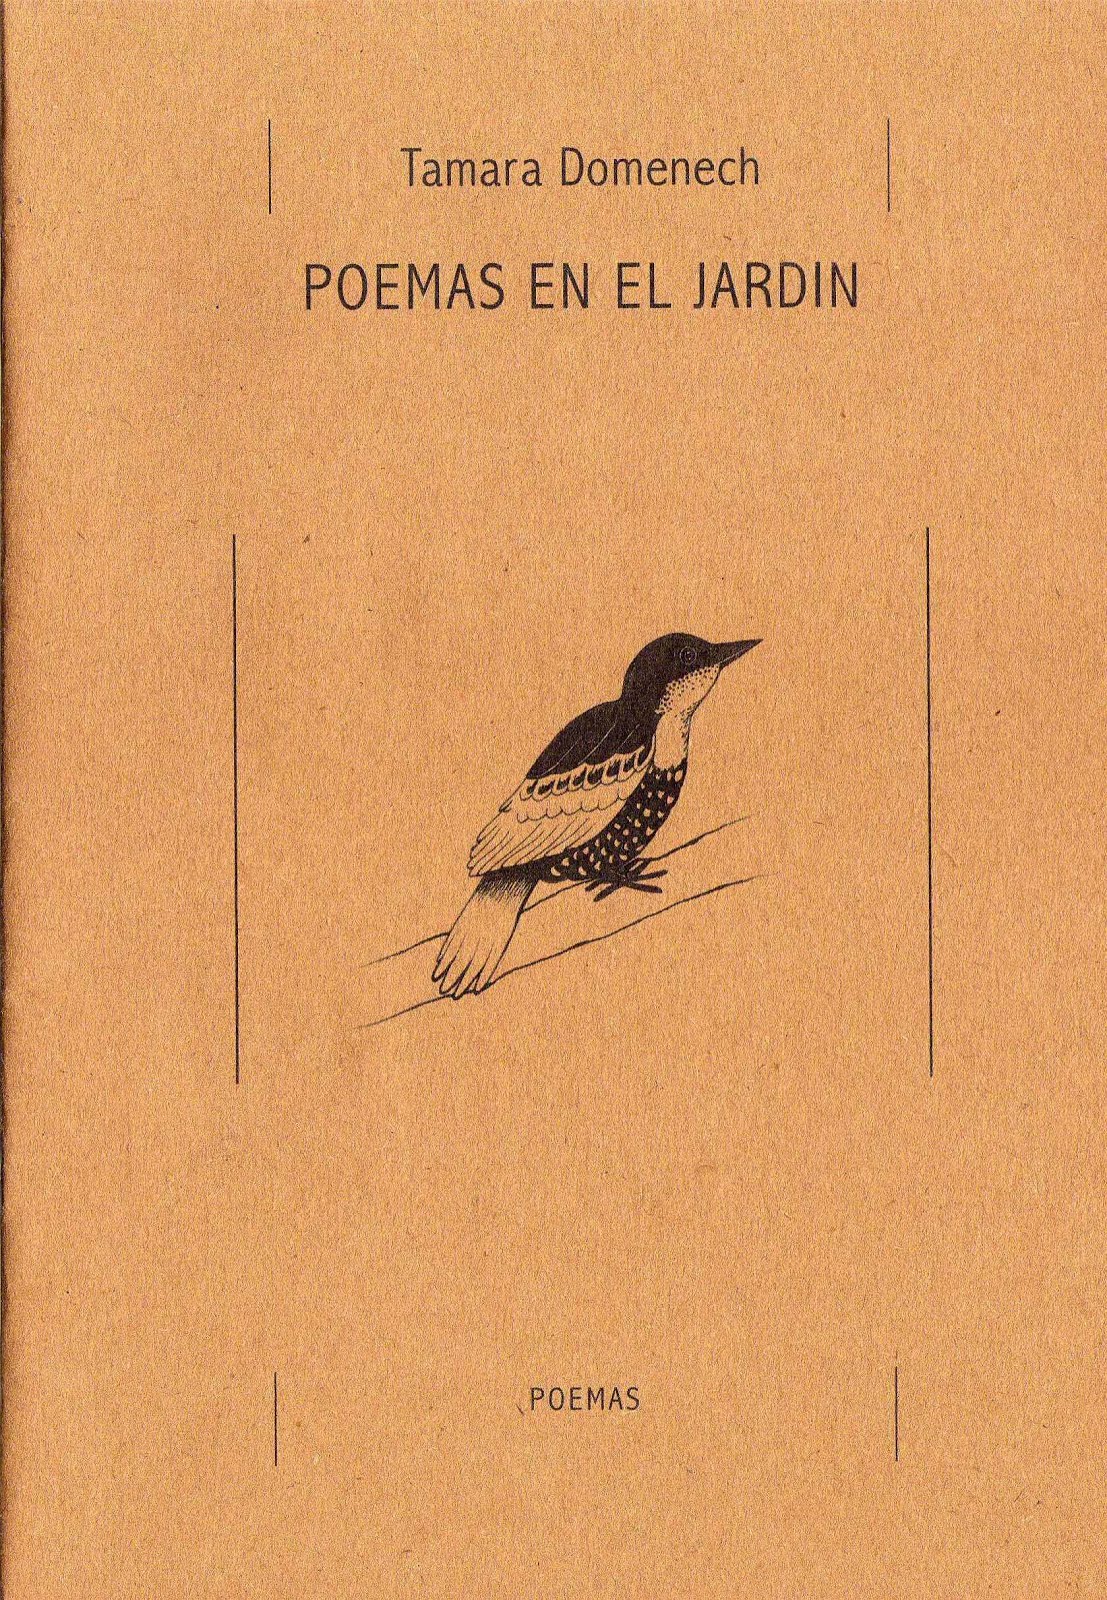 Poemas en el jardín. Zorra Poesía. 2009.